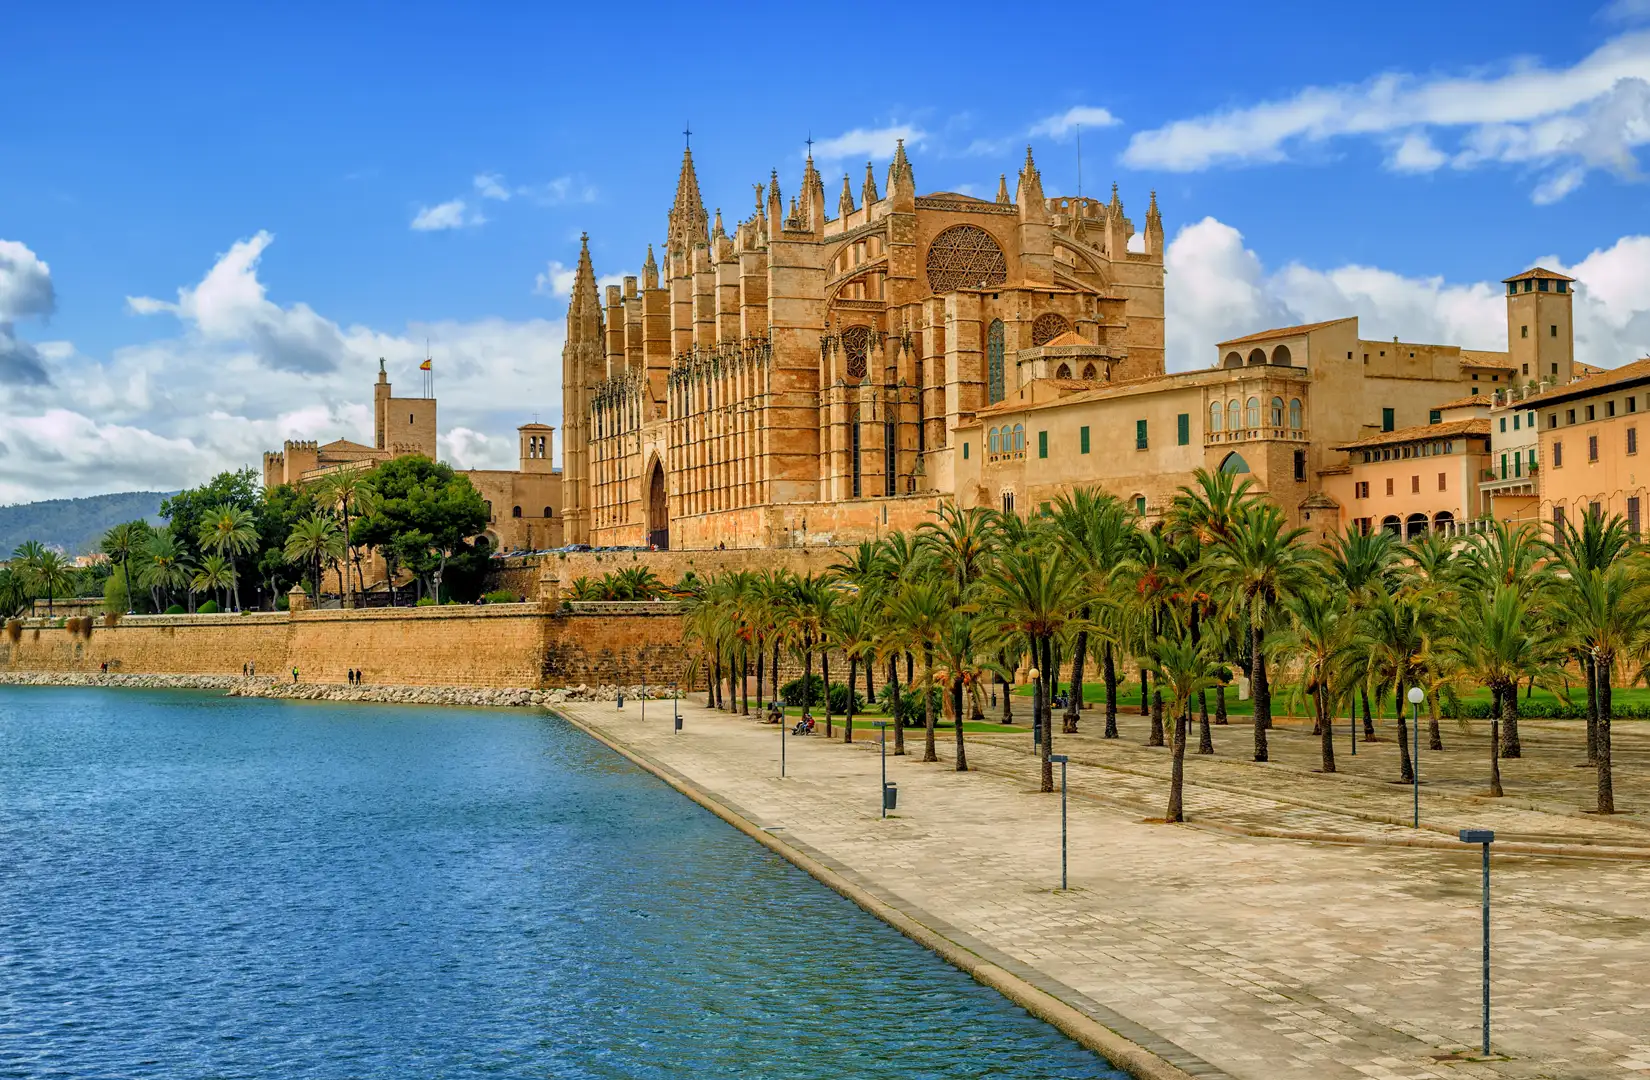 Blick auf die gotische mittelalterliche Kathedrale La Seu von Palma de Mallorca in Spanien